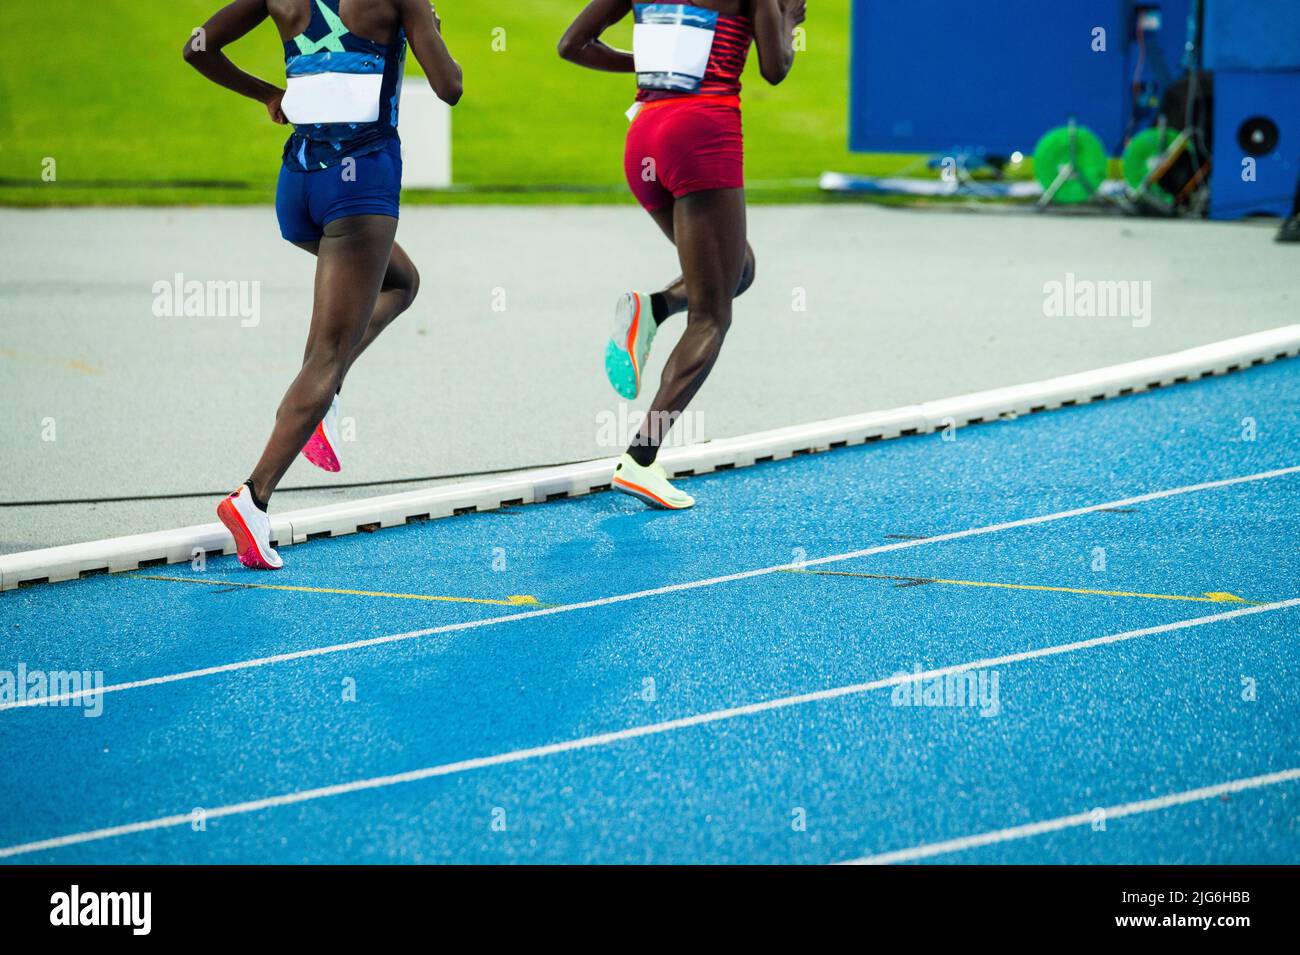 Course d'endurance, athlétisme et athlétisme. Les jambes de deux coureuses africaines sur la piste. Photo d'illustration pour le marathon et la course à pied Banque D'Images